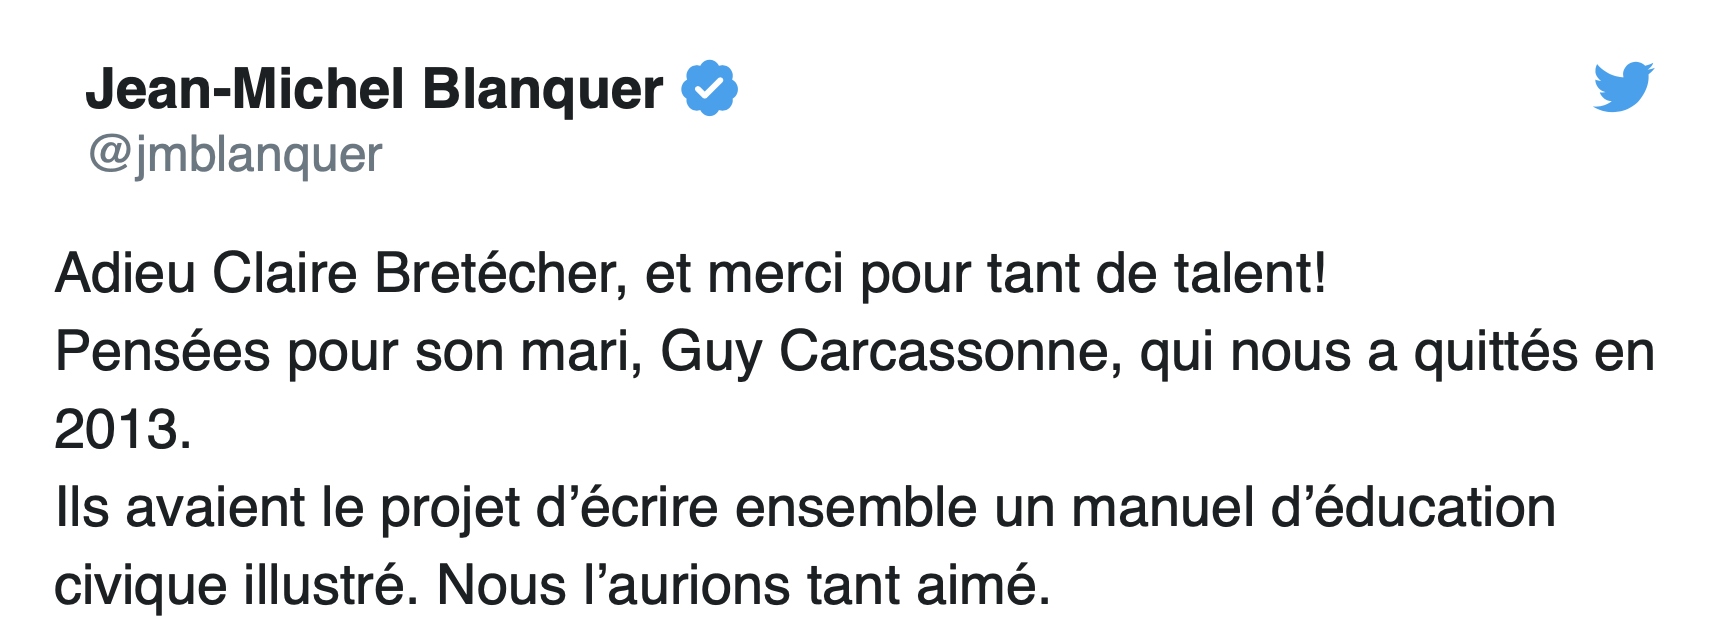 Le tweet de Jean-Michel Blanquer en “hommage” à Claire Bretécher